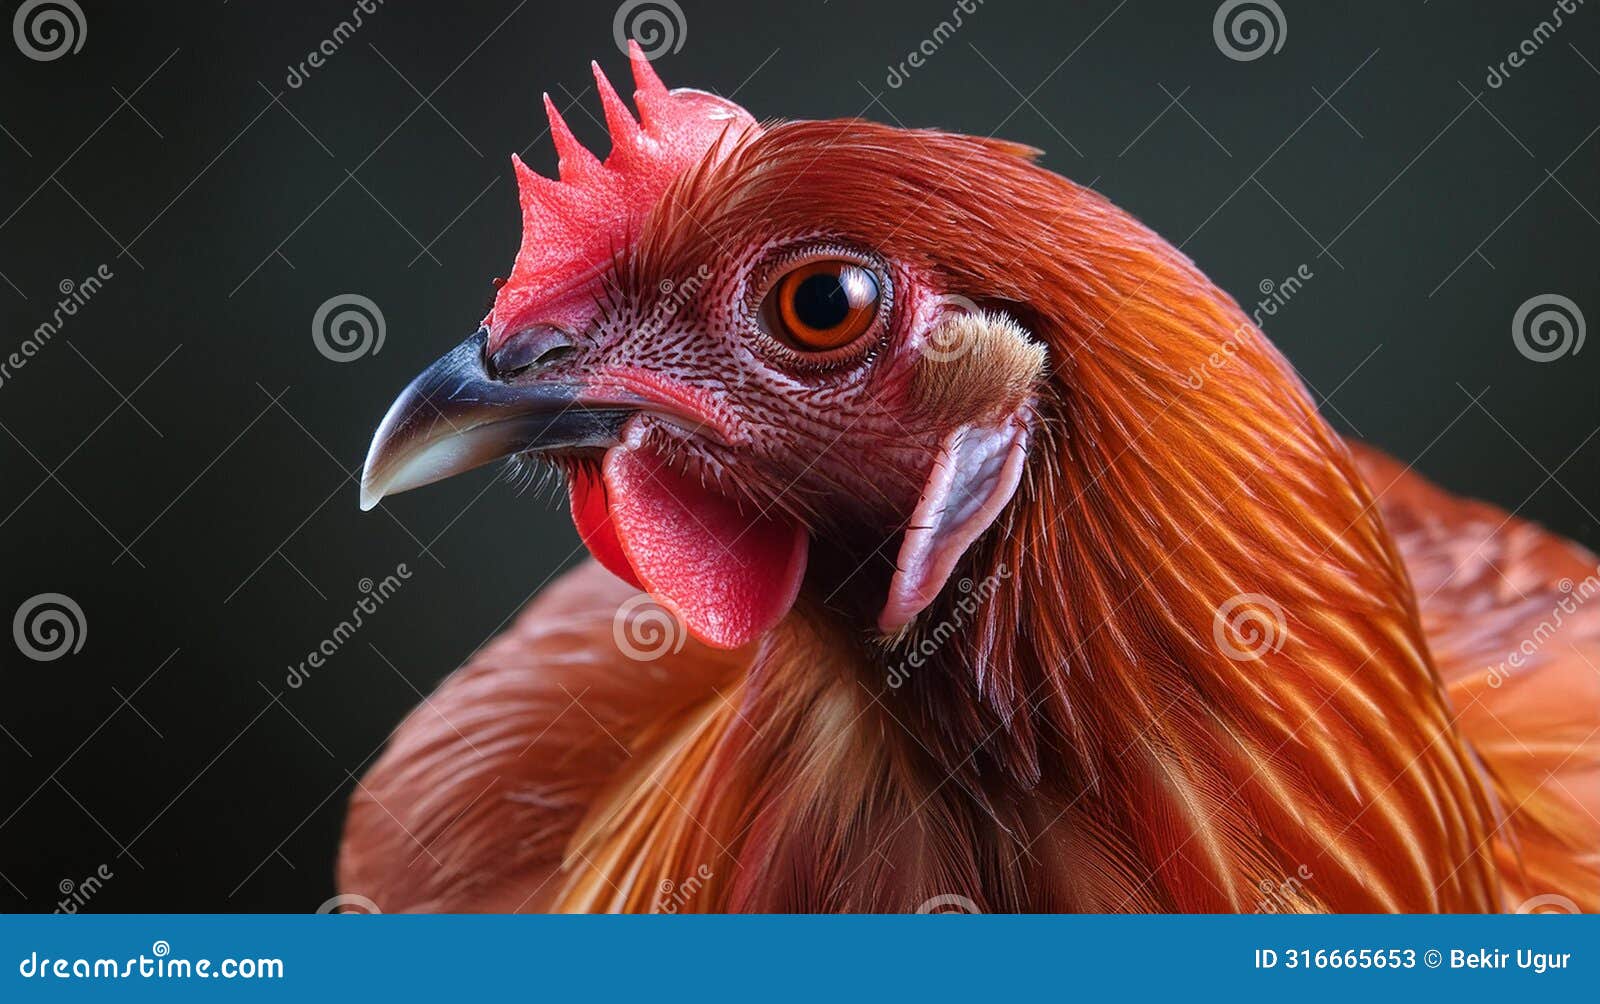 the hyper-realism of red chicken pure dark background